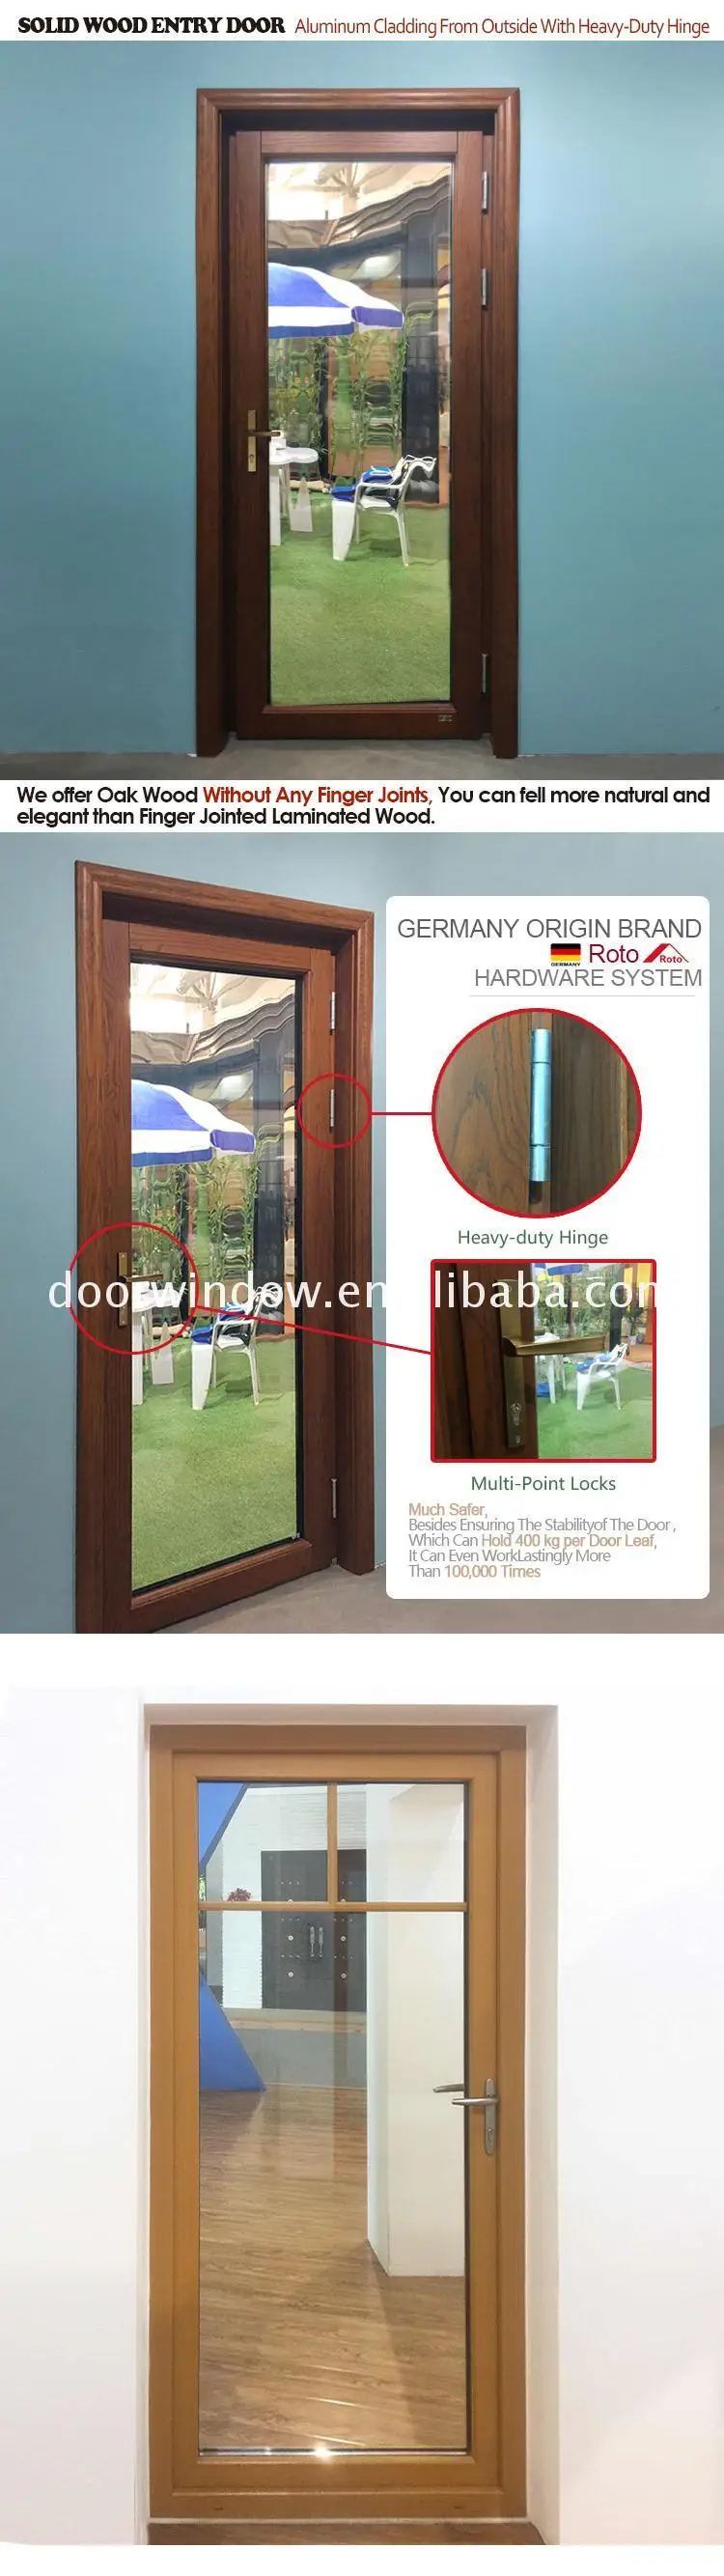 Good quality factory directly doorwin doors canada door warranty service